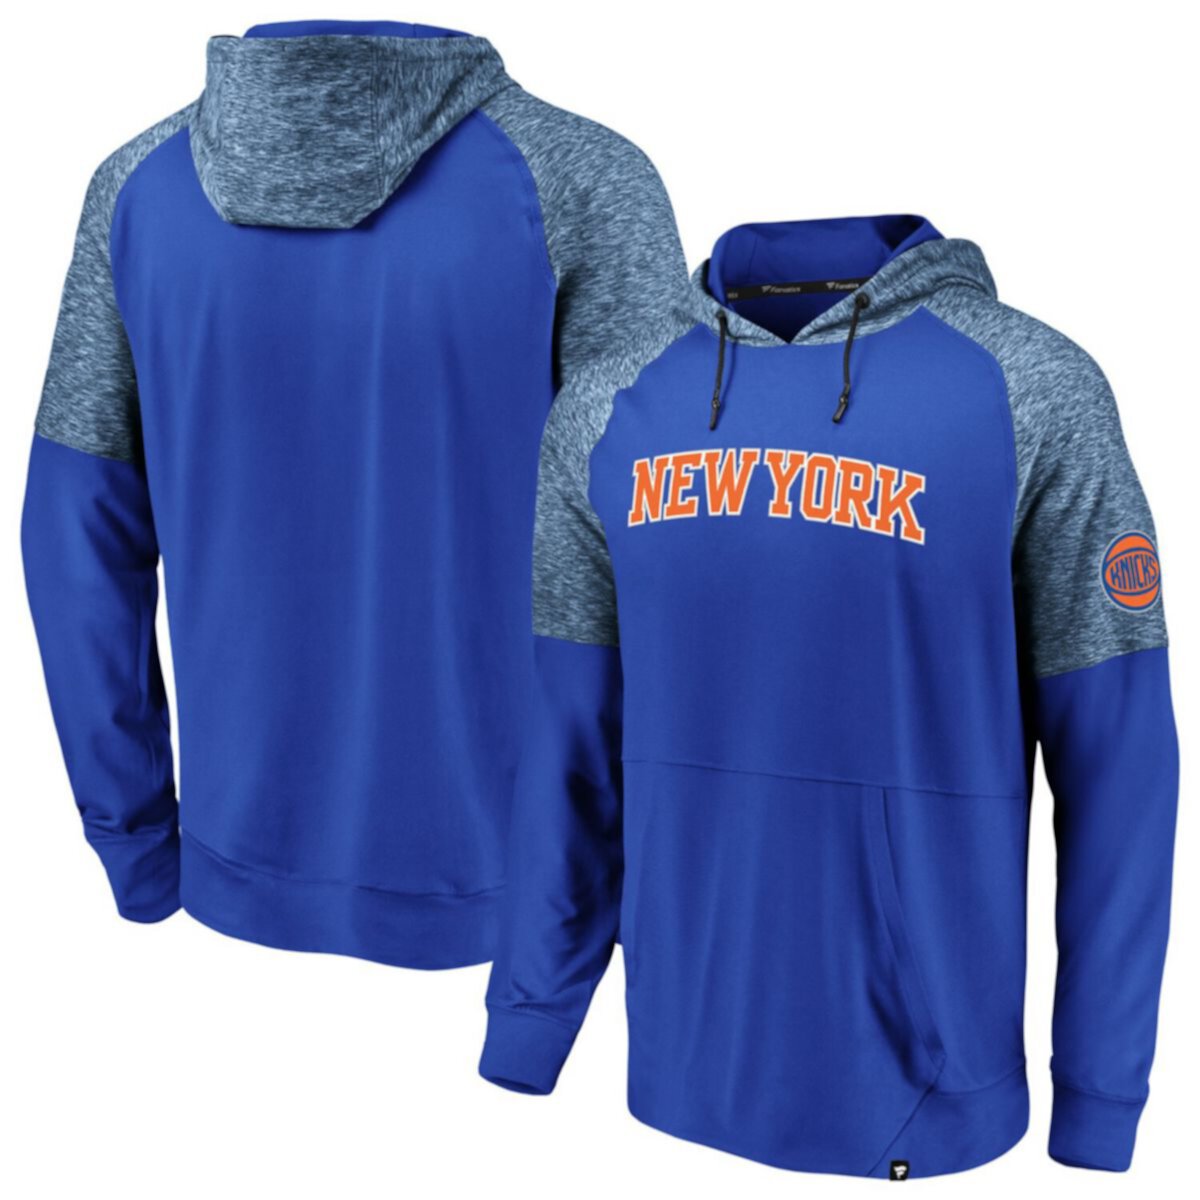 Синие мужские кроссовки New York Knicks с логотипом фанатиков Made to Move Статический пуловер с капюшоном и регланом Fanatics